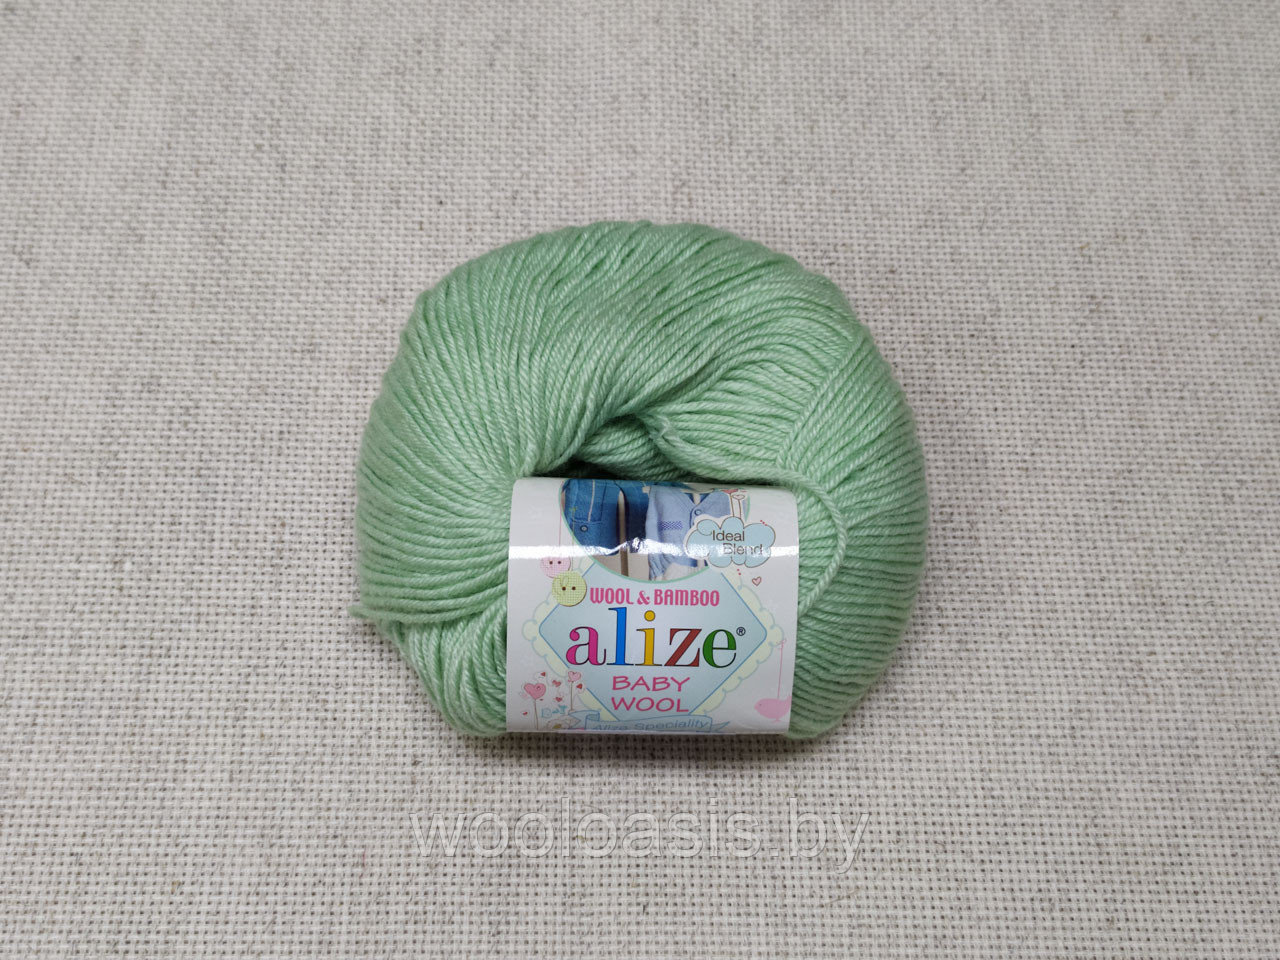 Пряжа Alize Baby Wool, Ализе Беби Вул, турецкая, шерсть, акрил, бамбук, для ручного вязания (цвет 188)